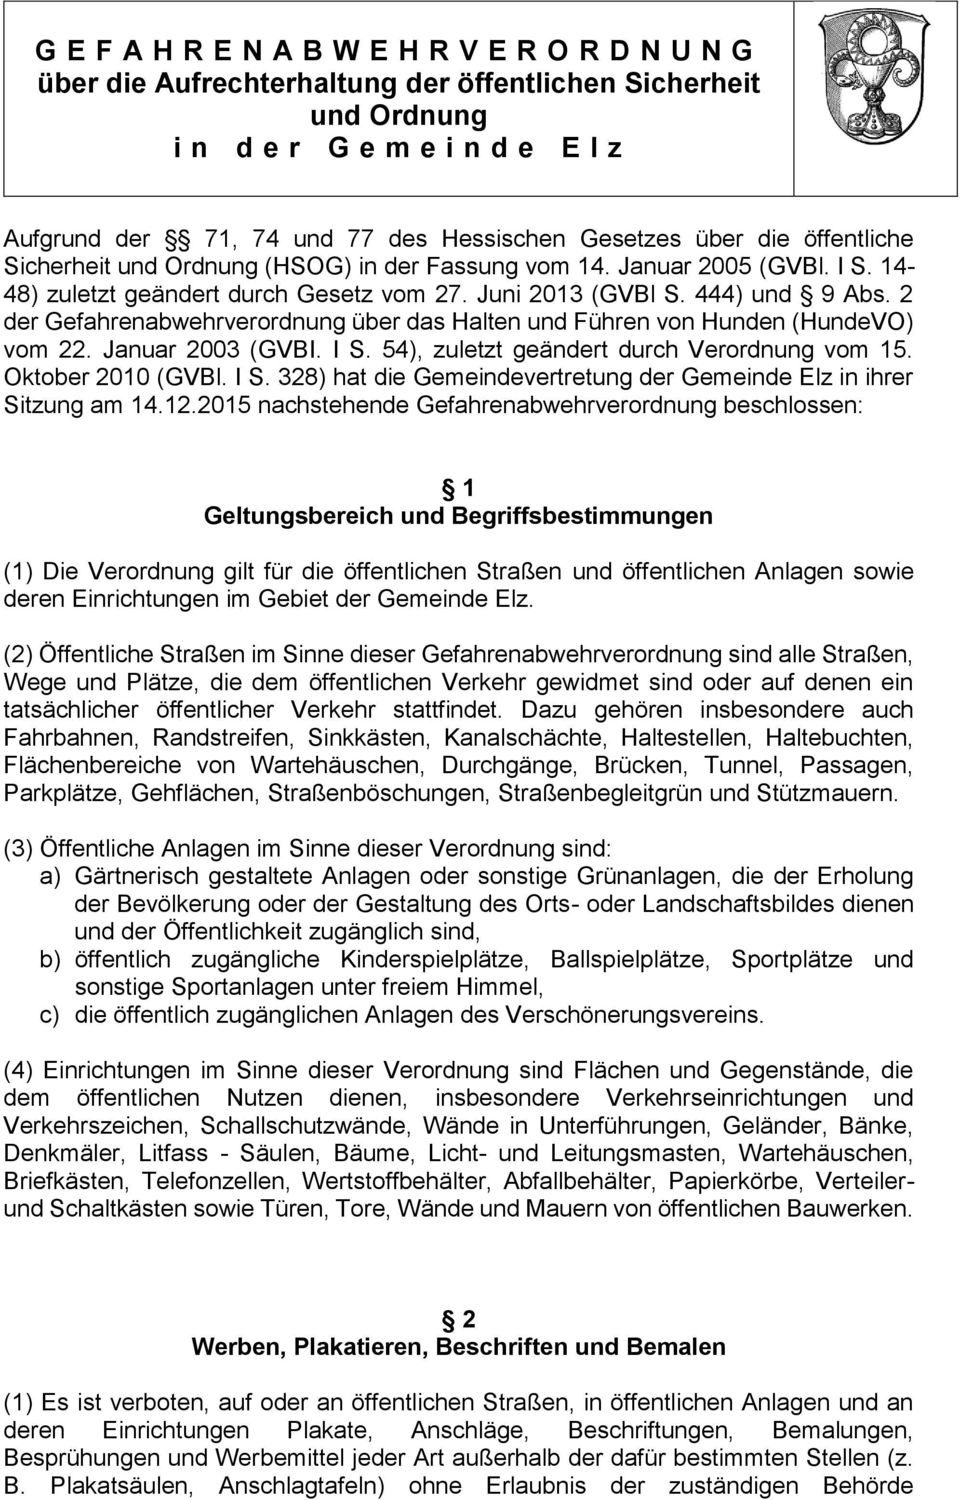 2 der Gefahrenabwehrverordnung über das Halten und Führen von Hunden (HundeVO) vom 22. Januar 2003 (GVBI. I S. 54), zuletzt geändert durch Verordnung vom 15. Oktober 2010 (GVBl. I S. 328) hat die Gemeindevertretung der Gemeinde Elz in ihrer Sitzung am 14.